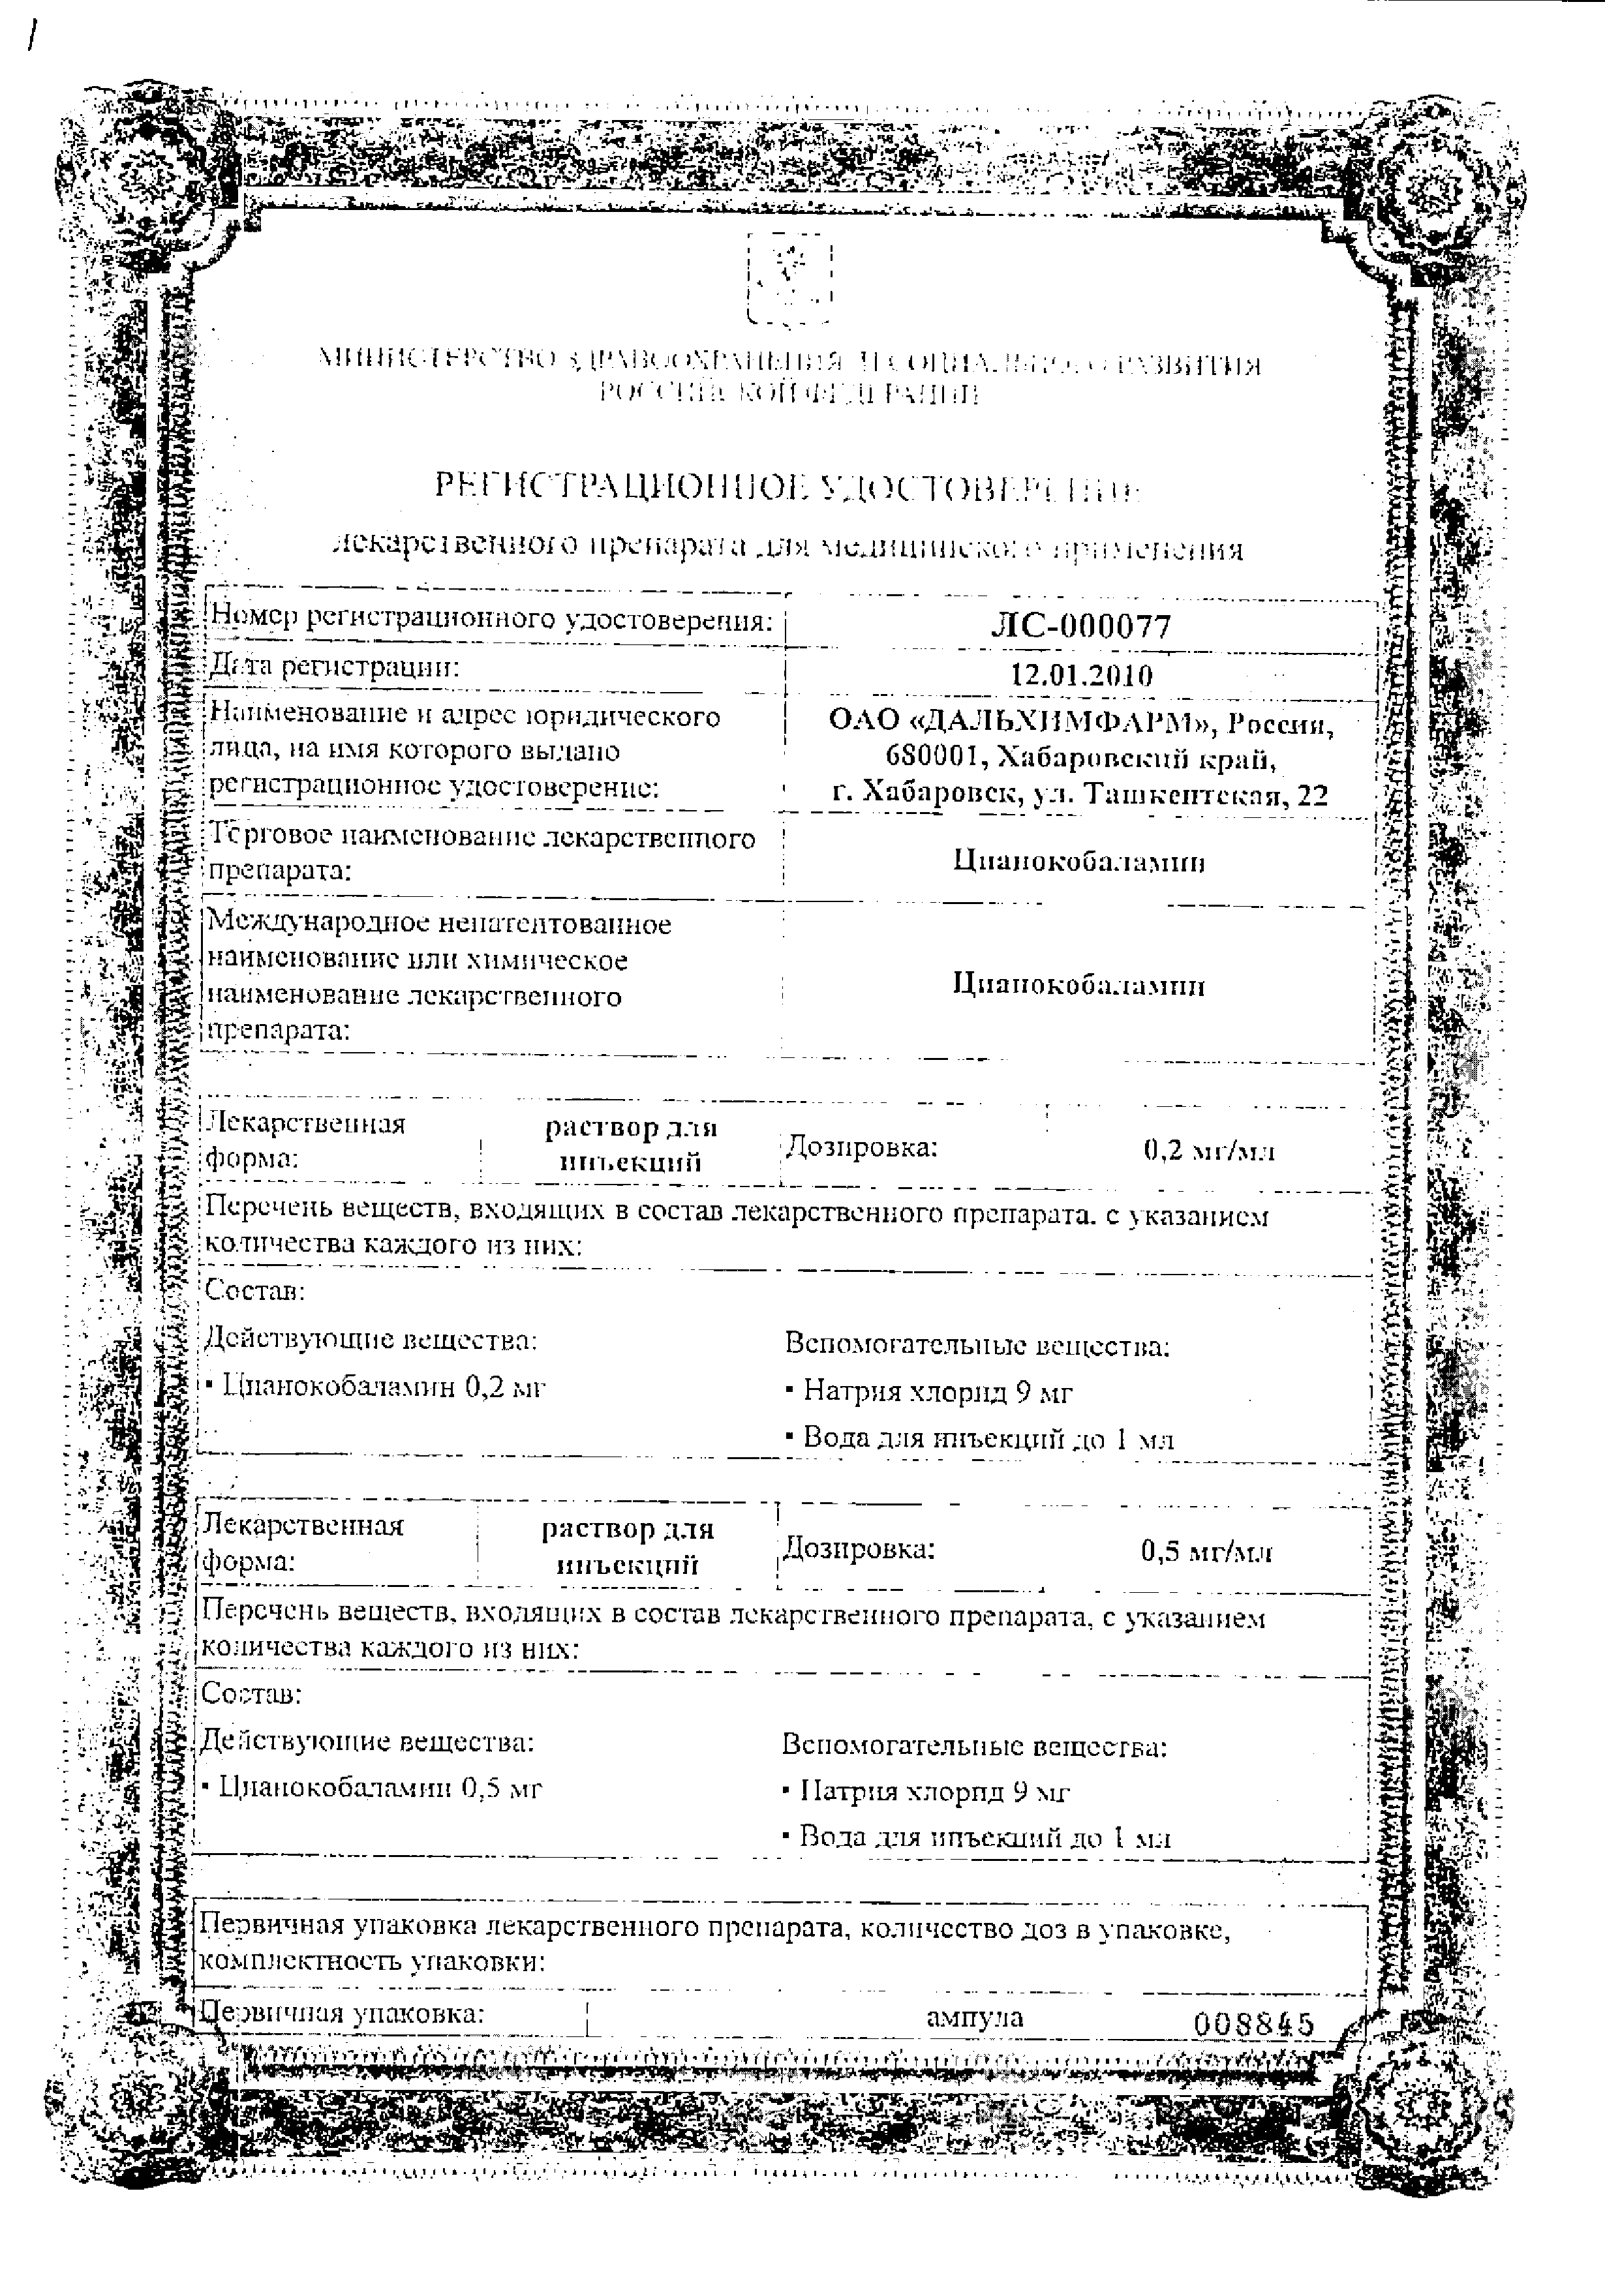 Цианокобаламин сертификат